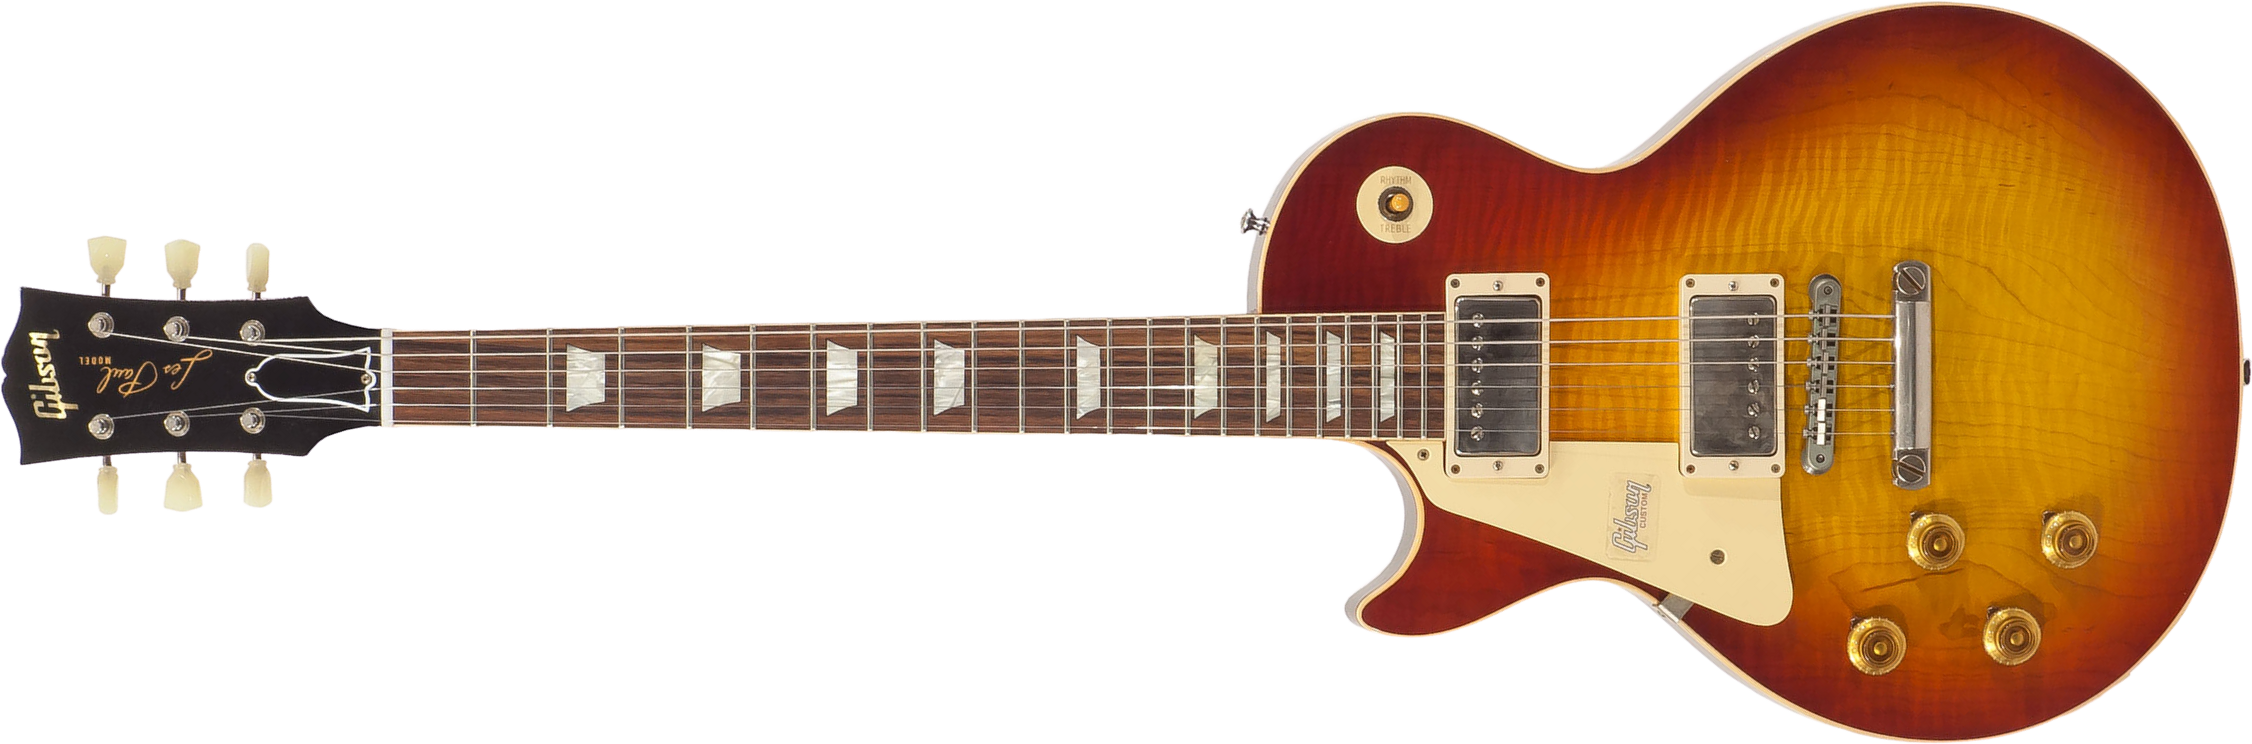 Gibson Custom Shop M2m Les Paul Standard 1959 Lh Gaucher Ltd 2h Ht Rw #971610 - Vos Washed Cherry - Linkshandige elektrische gitaar - Main picture